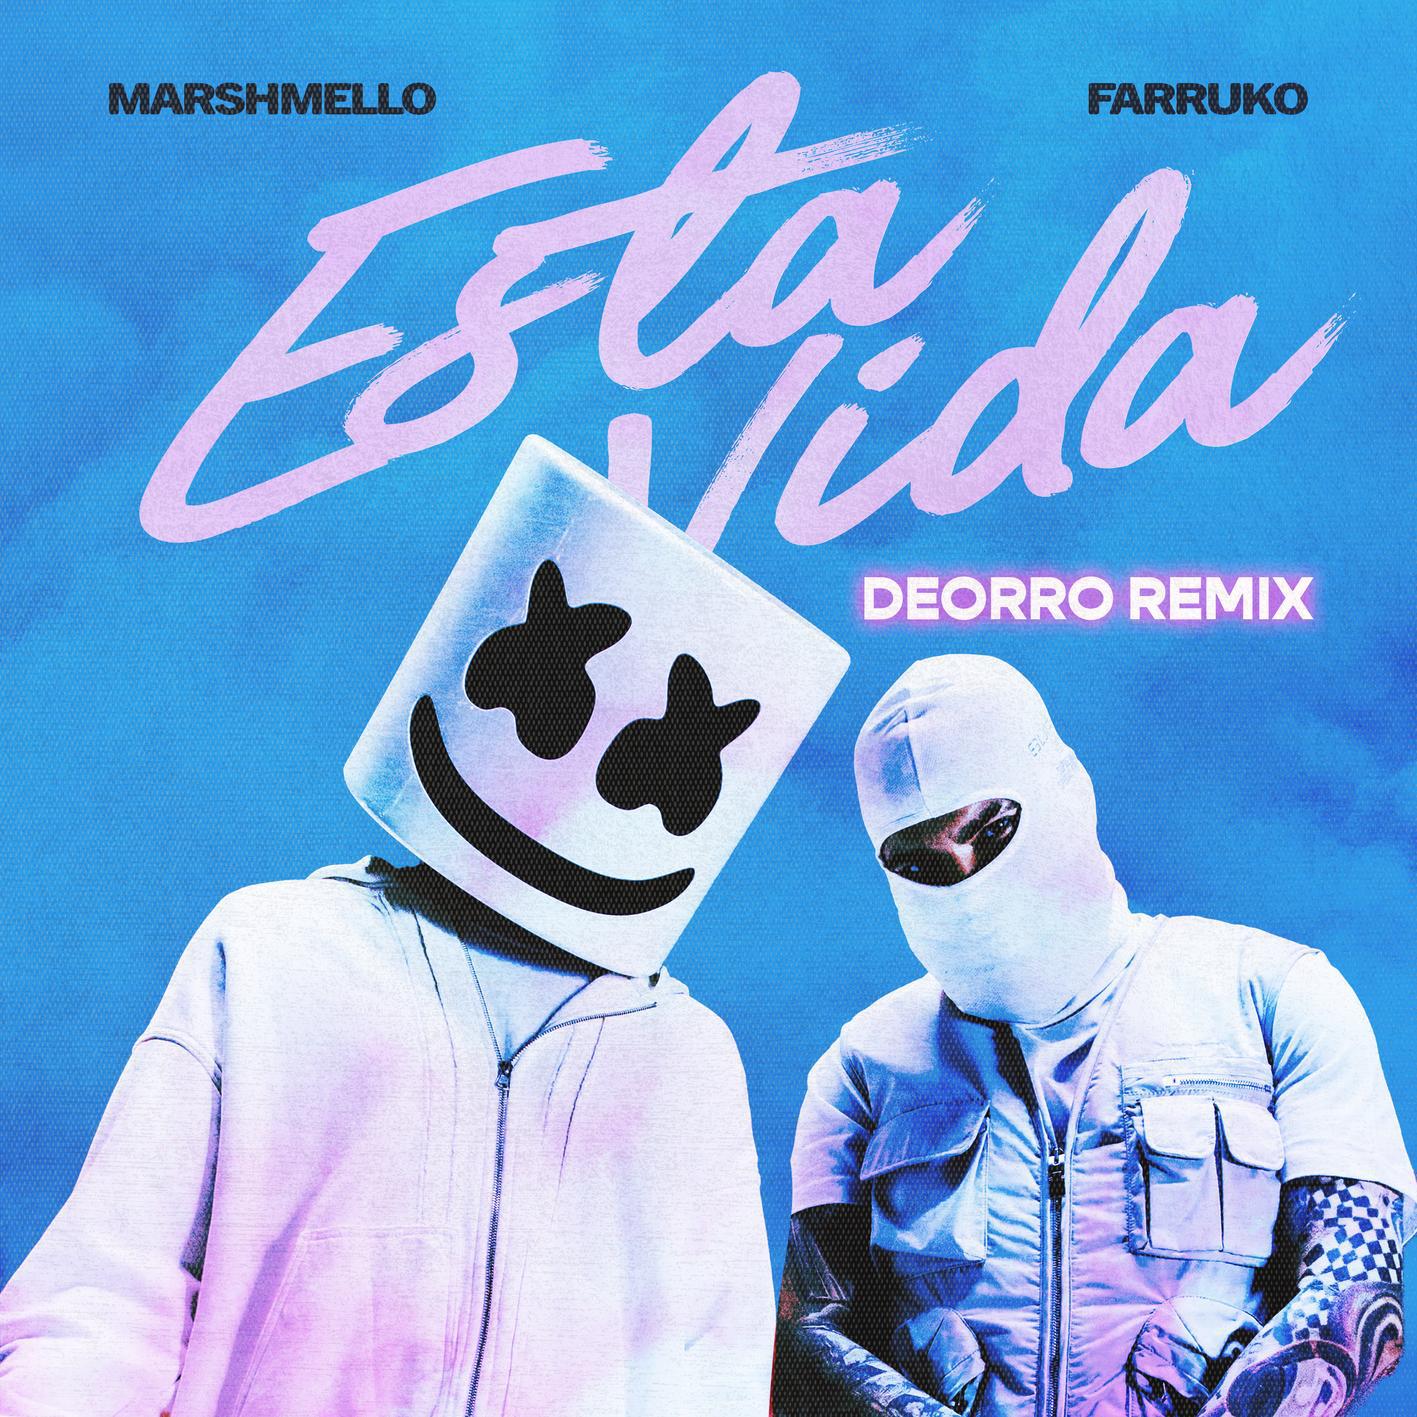 Marshmello - Esta Vida (Deorro Remix)